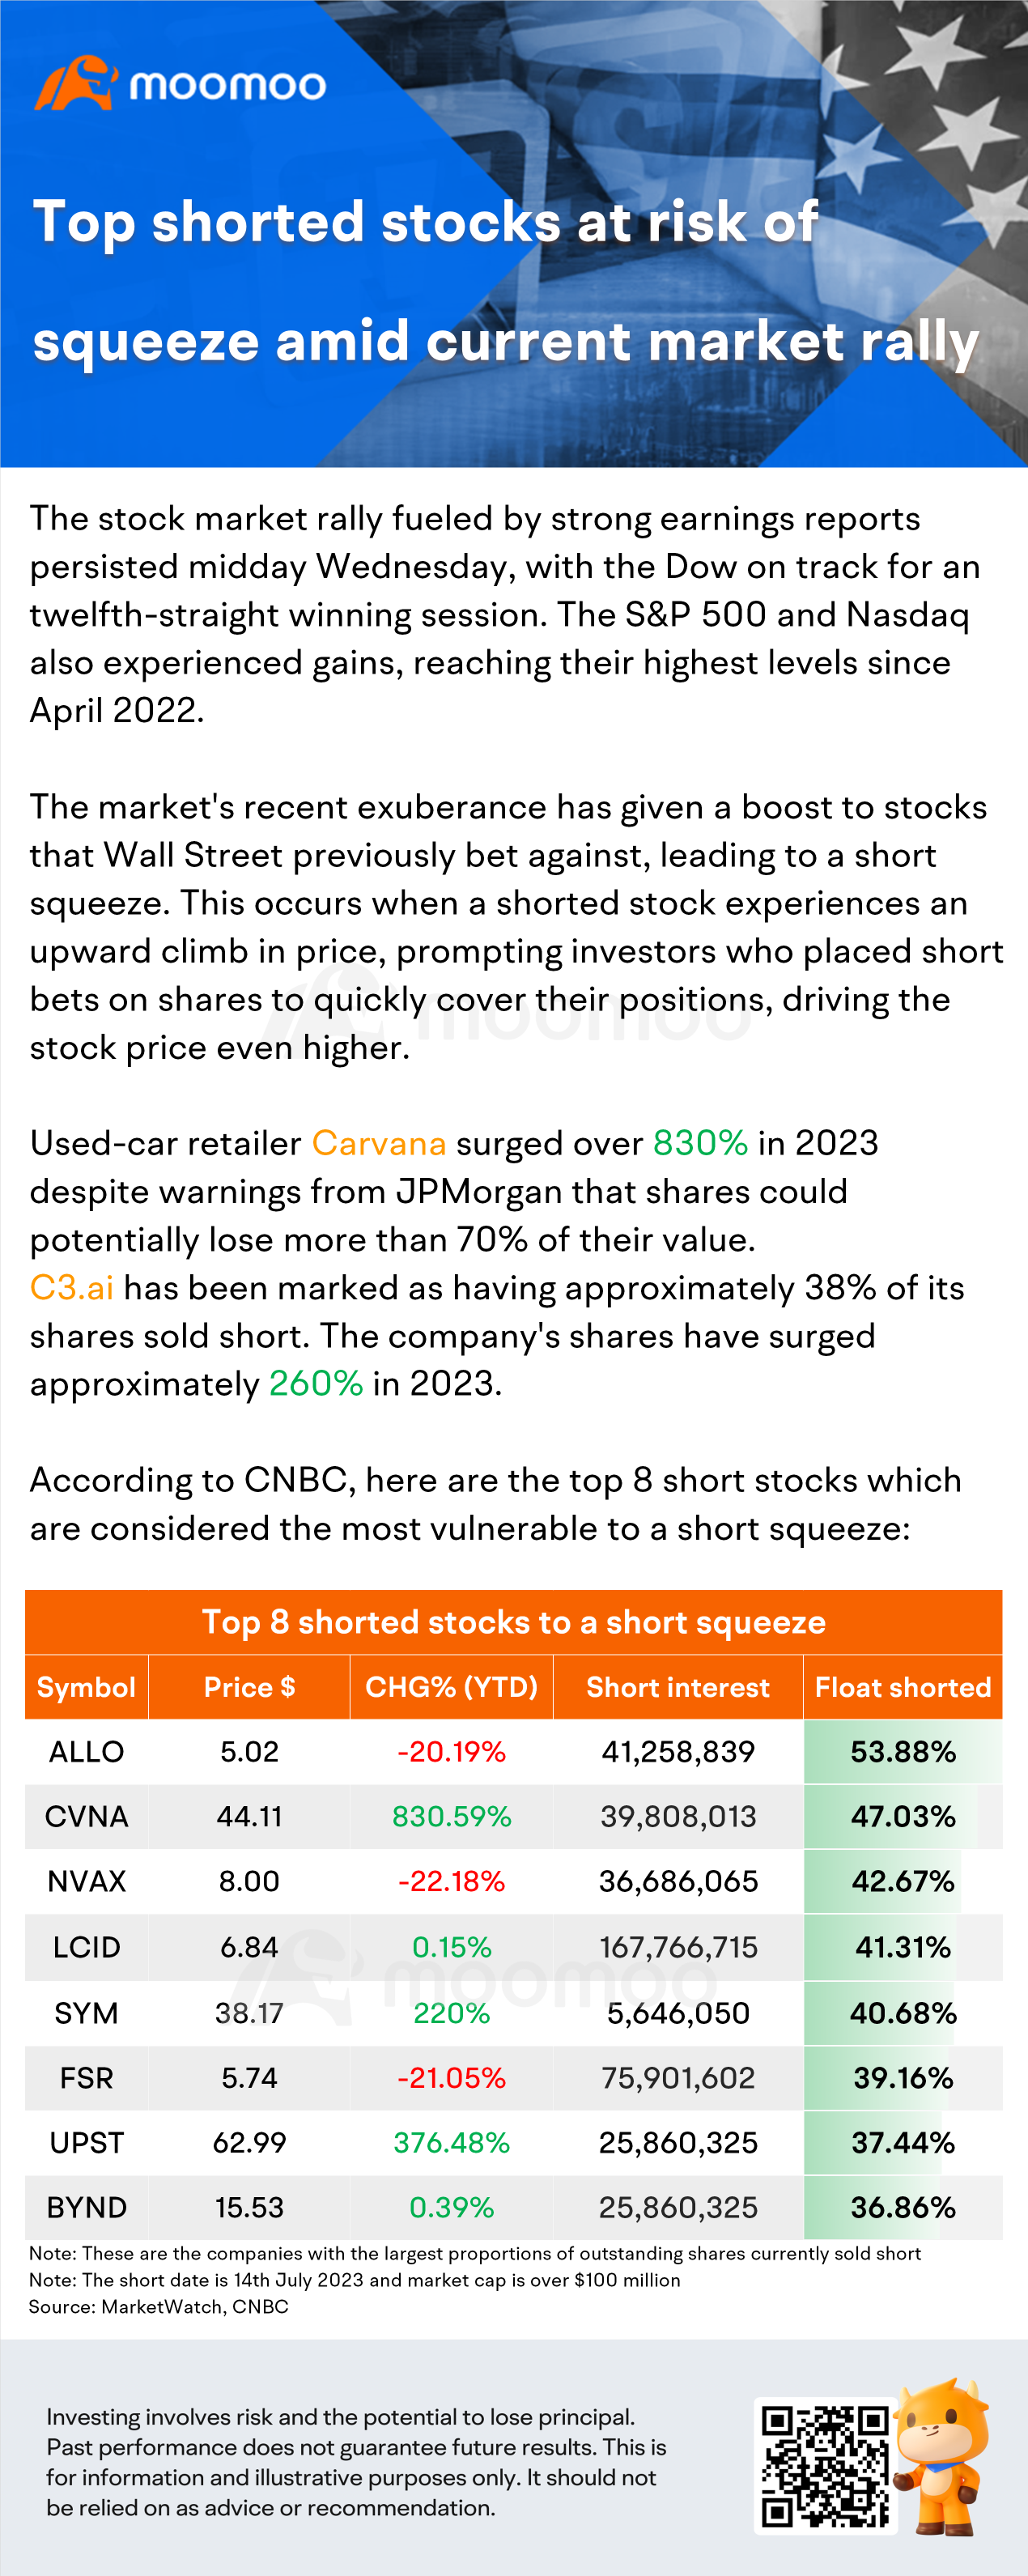 現在の市場の急上昇により、スクイーズリスクがあるトップショート株式